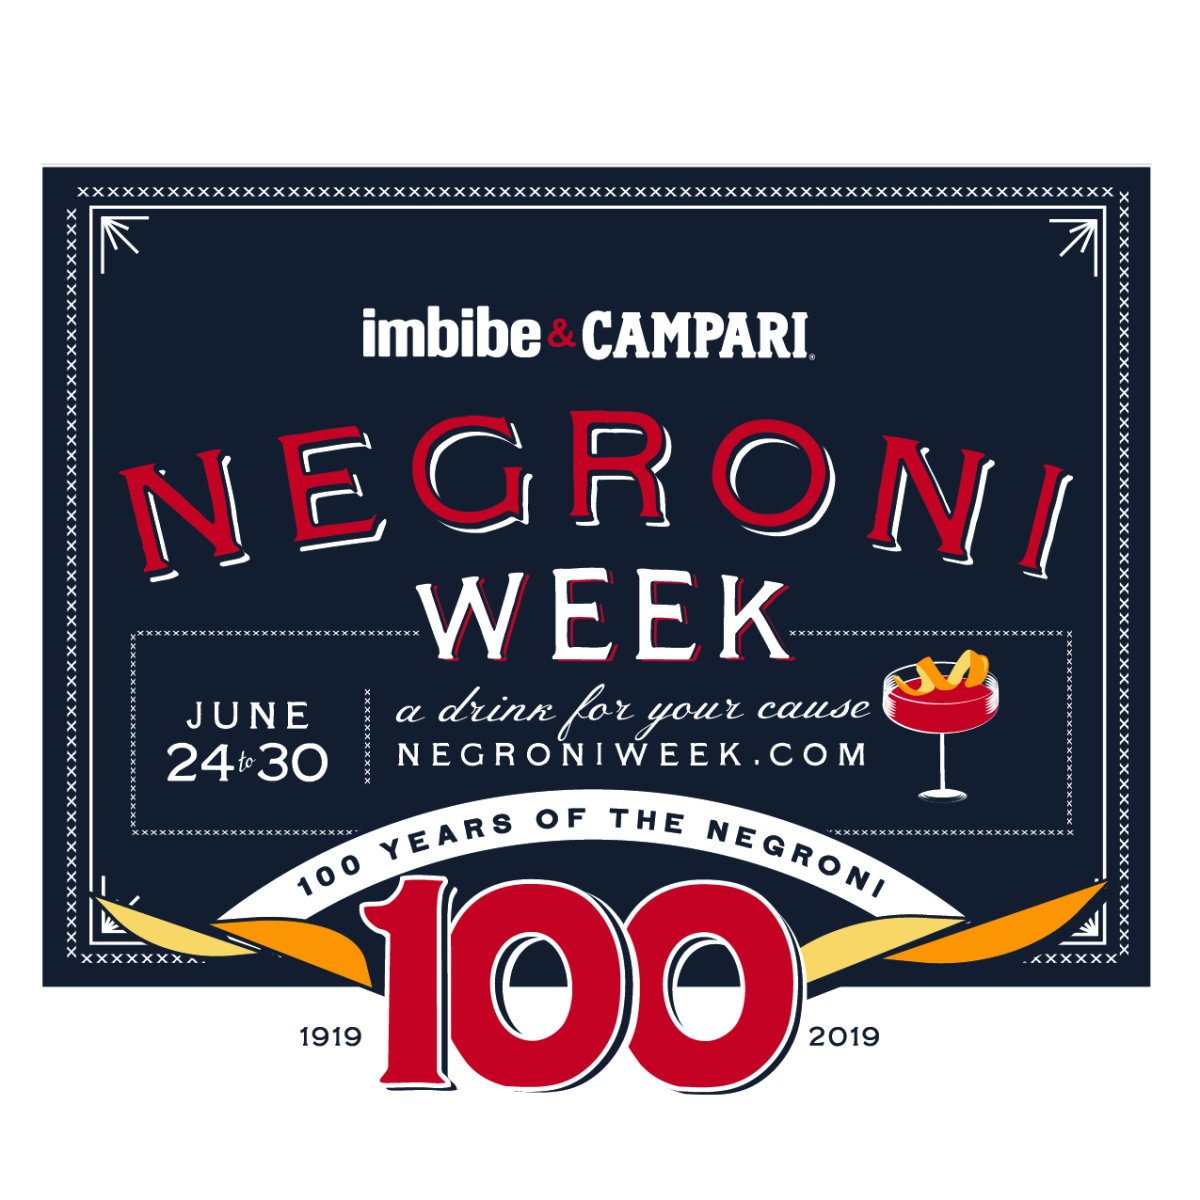 Negroni Week 2019 - image